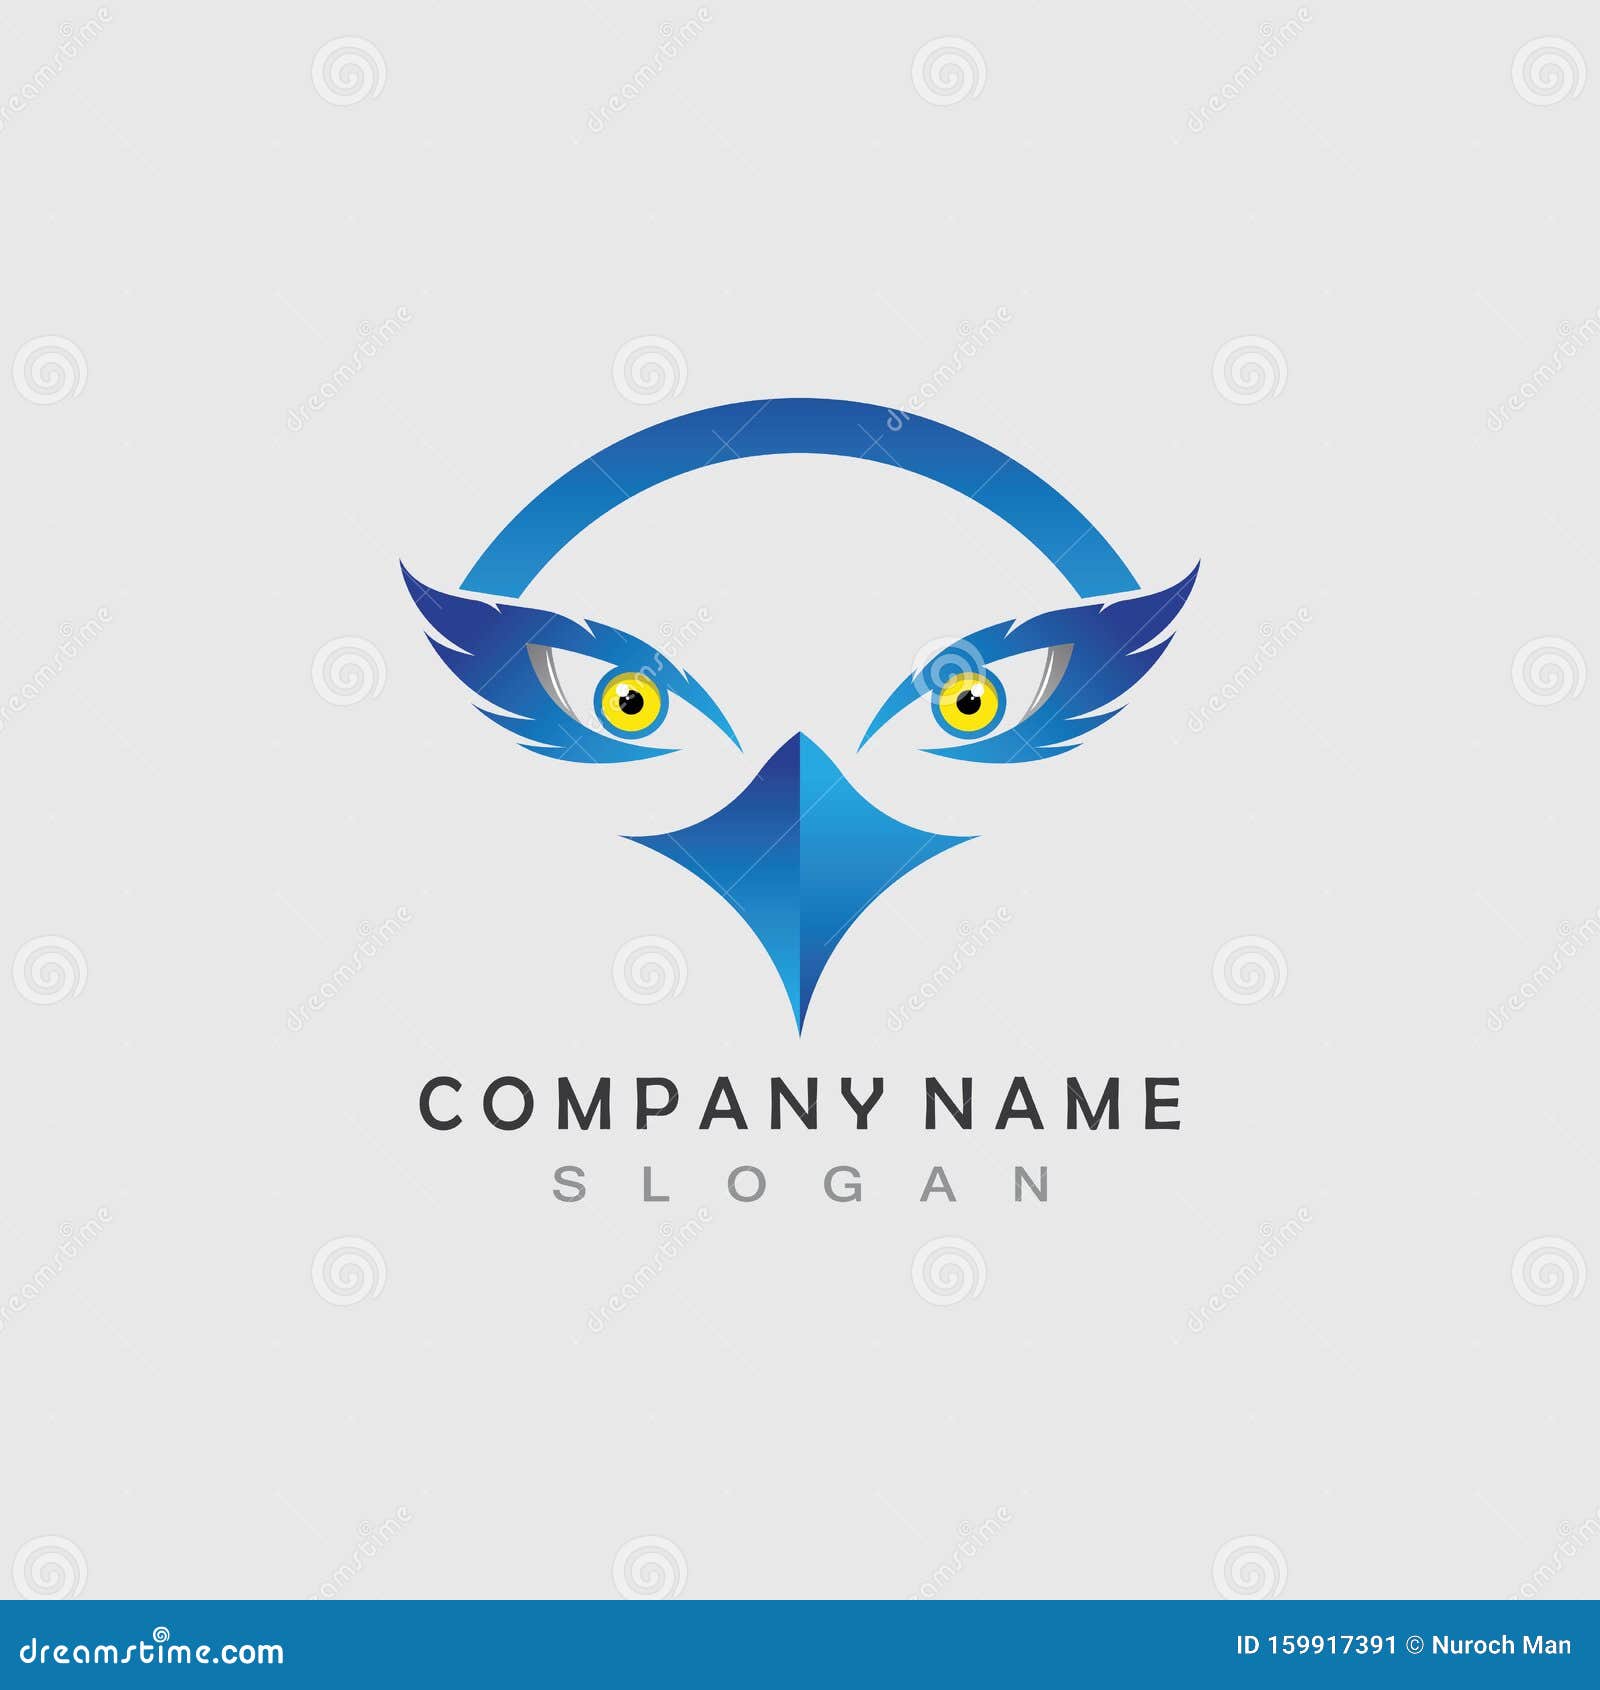 Eagle Eye Logo Concept Design Template Stock Vector Illustration Of Graphic Falcon